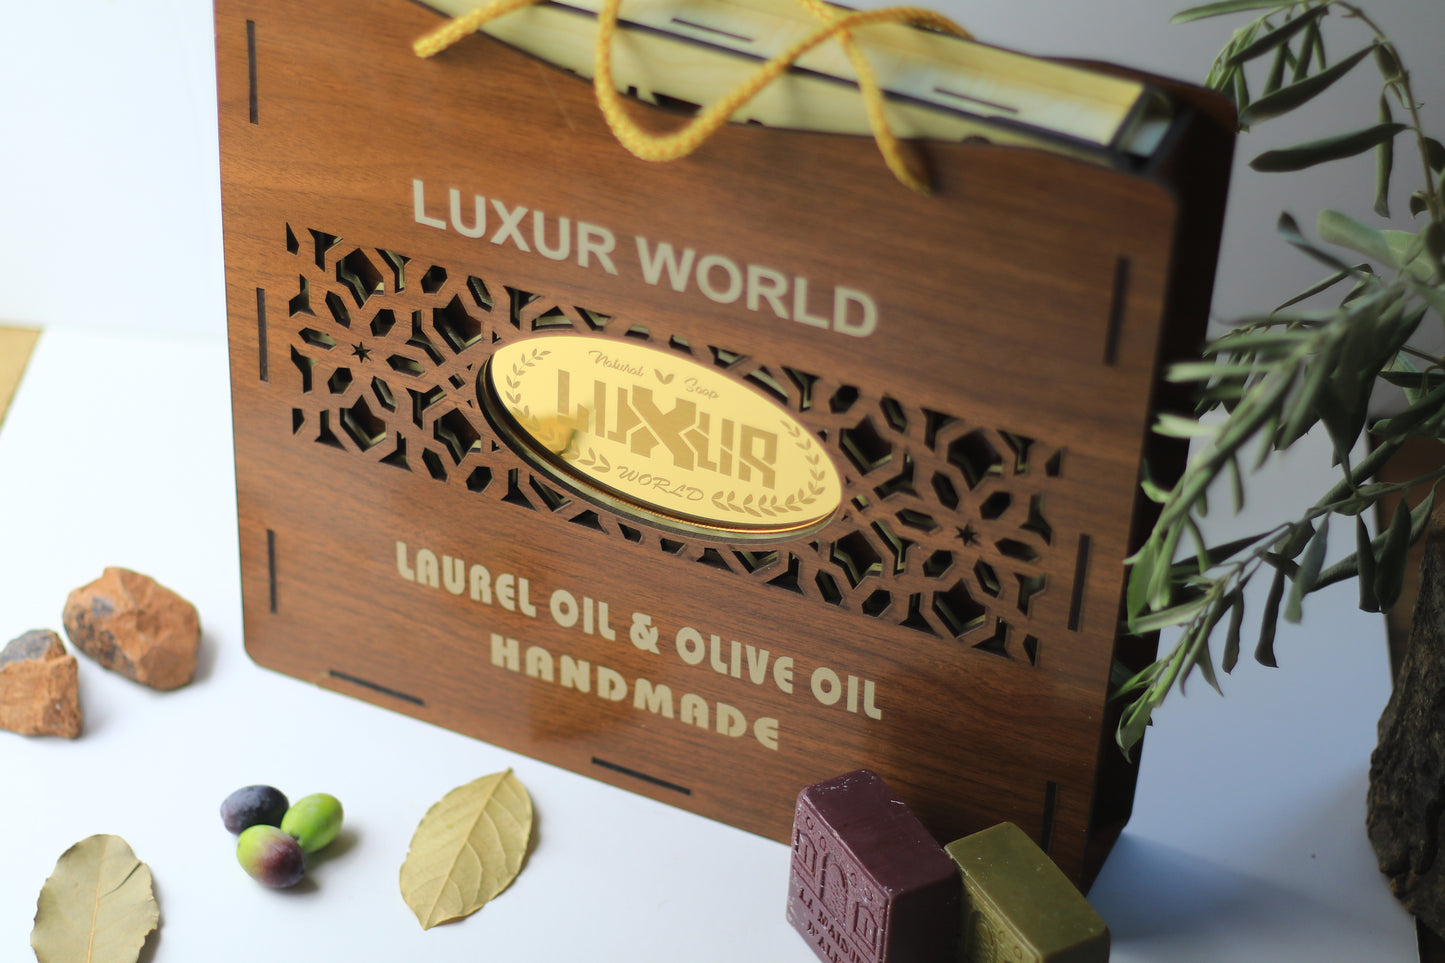 laurel and olive oil 9 soaps set